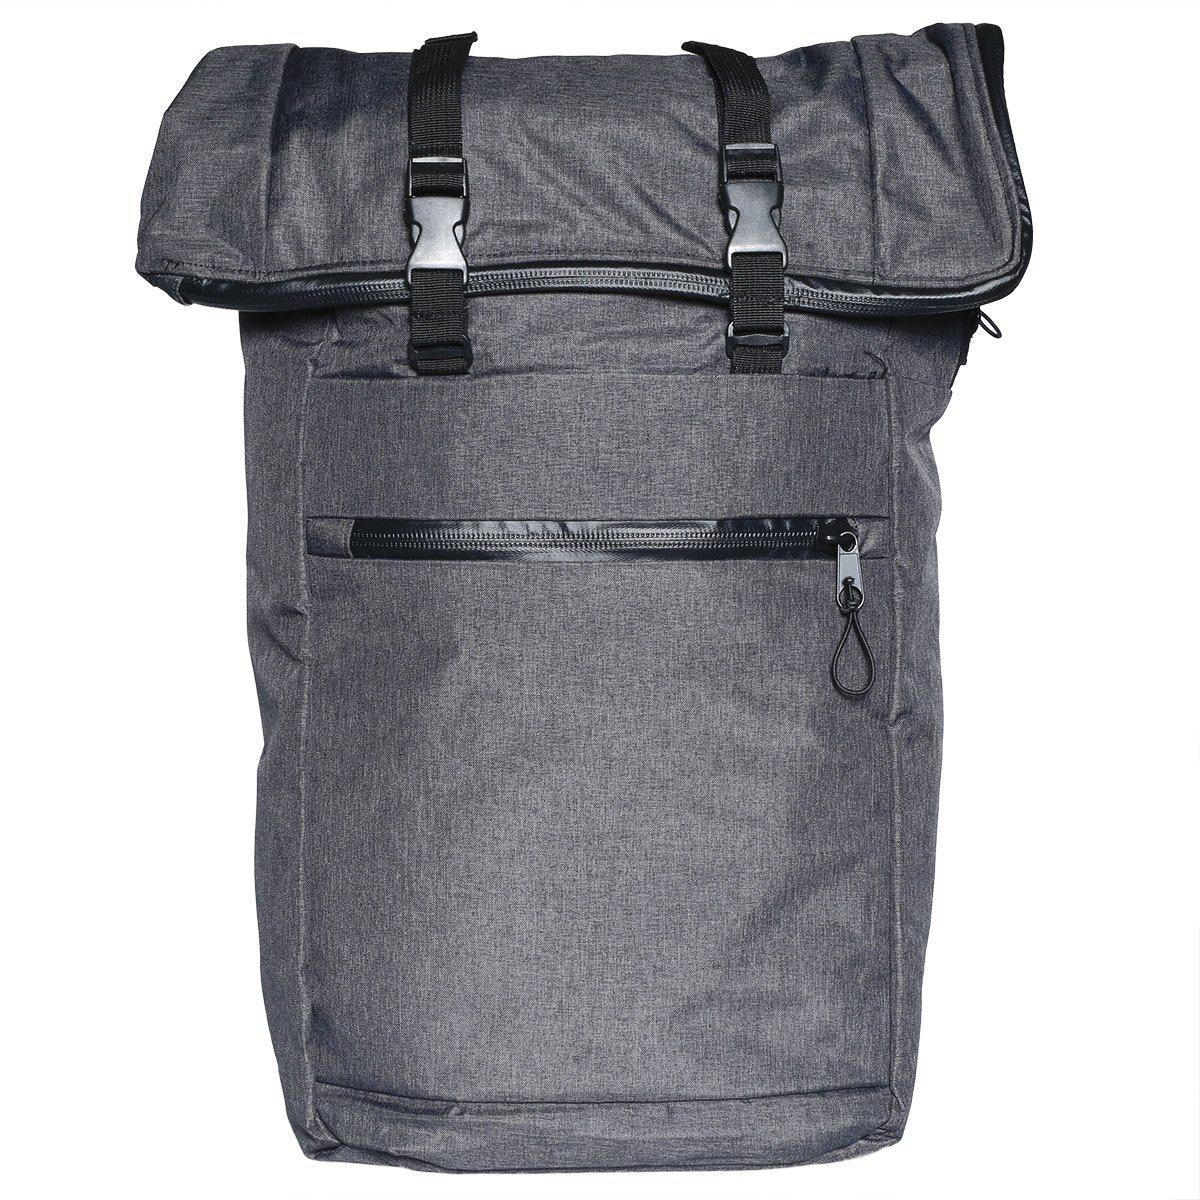 odor resistant backpack